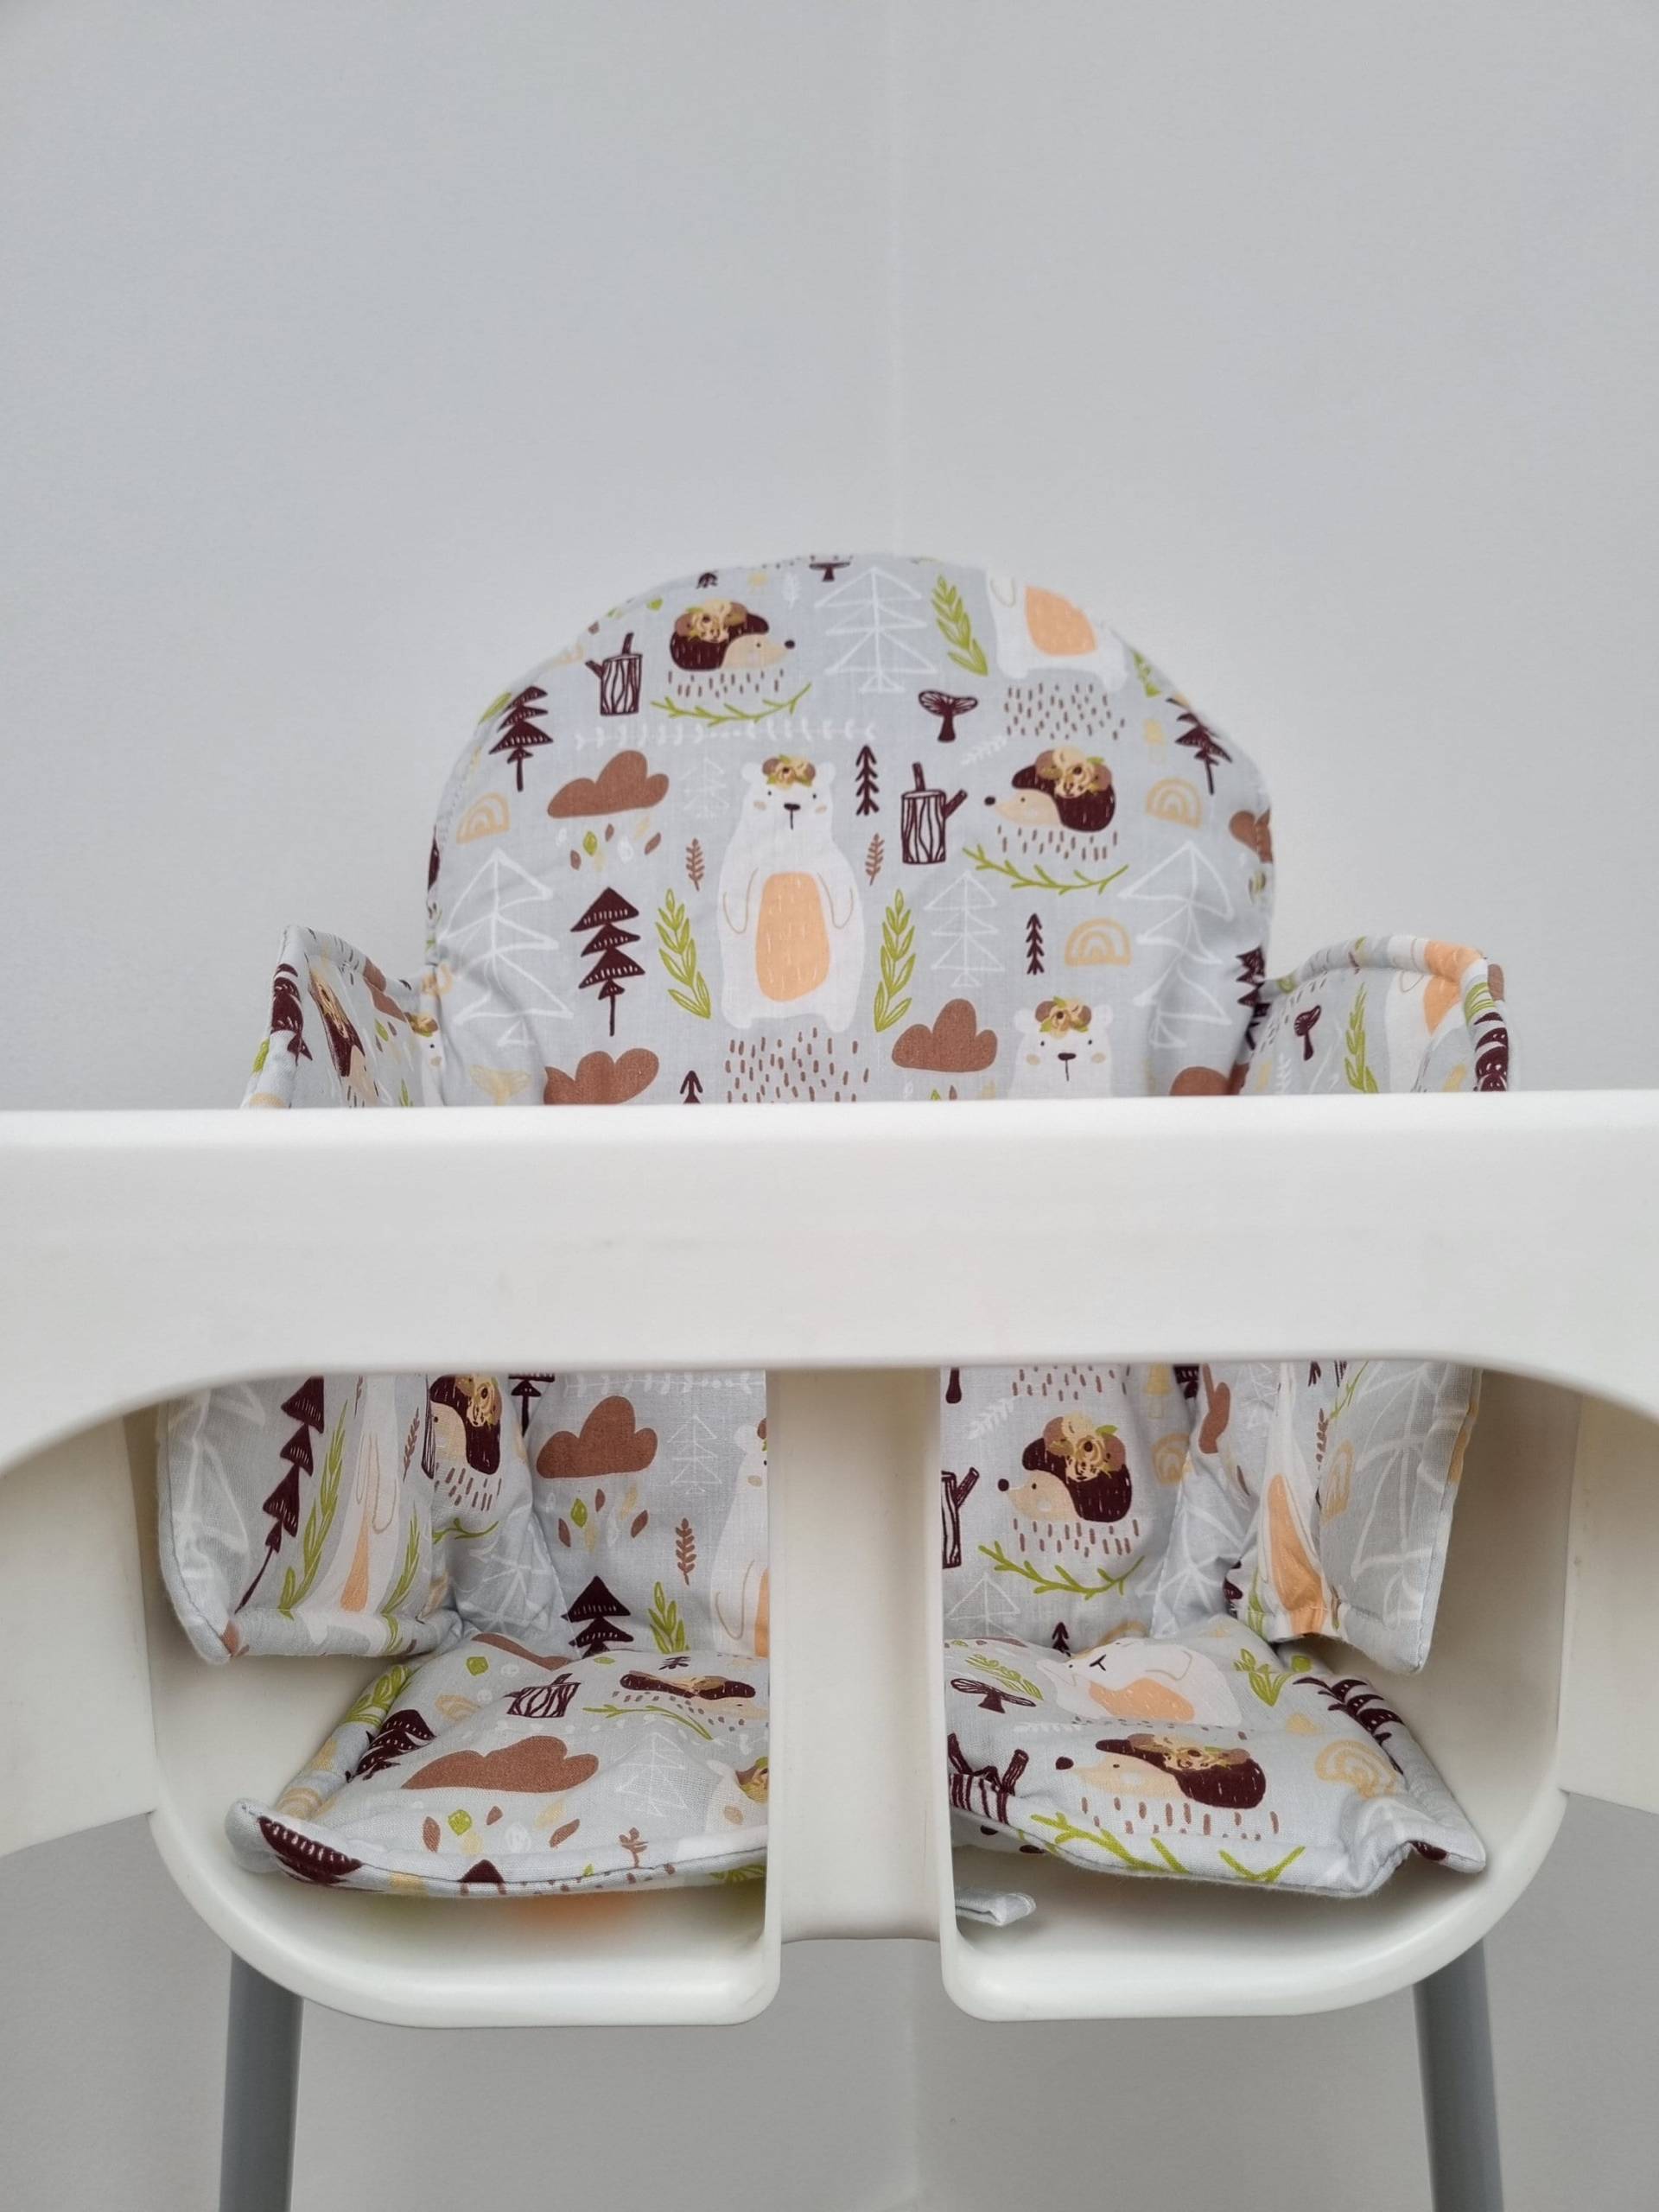 Ikea Antilop Kissen Baumwolleinsatz Für Ikea Antilop Hochstuhl , Waschbare Einlage Fütterung von Etsy - Hellobabycom